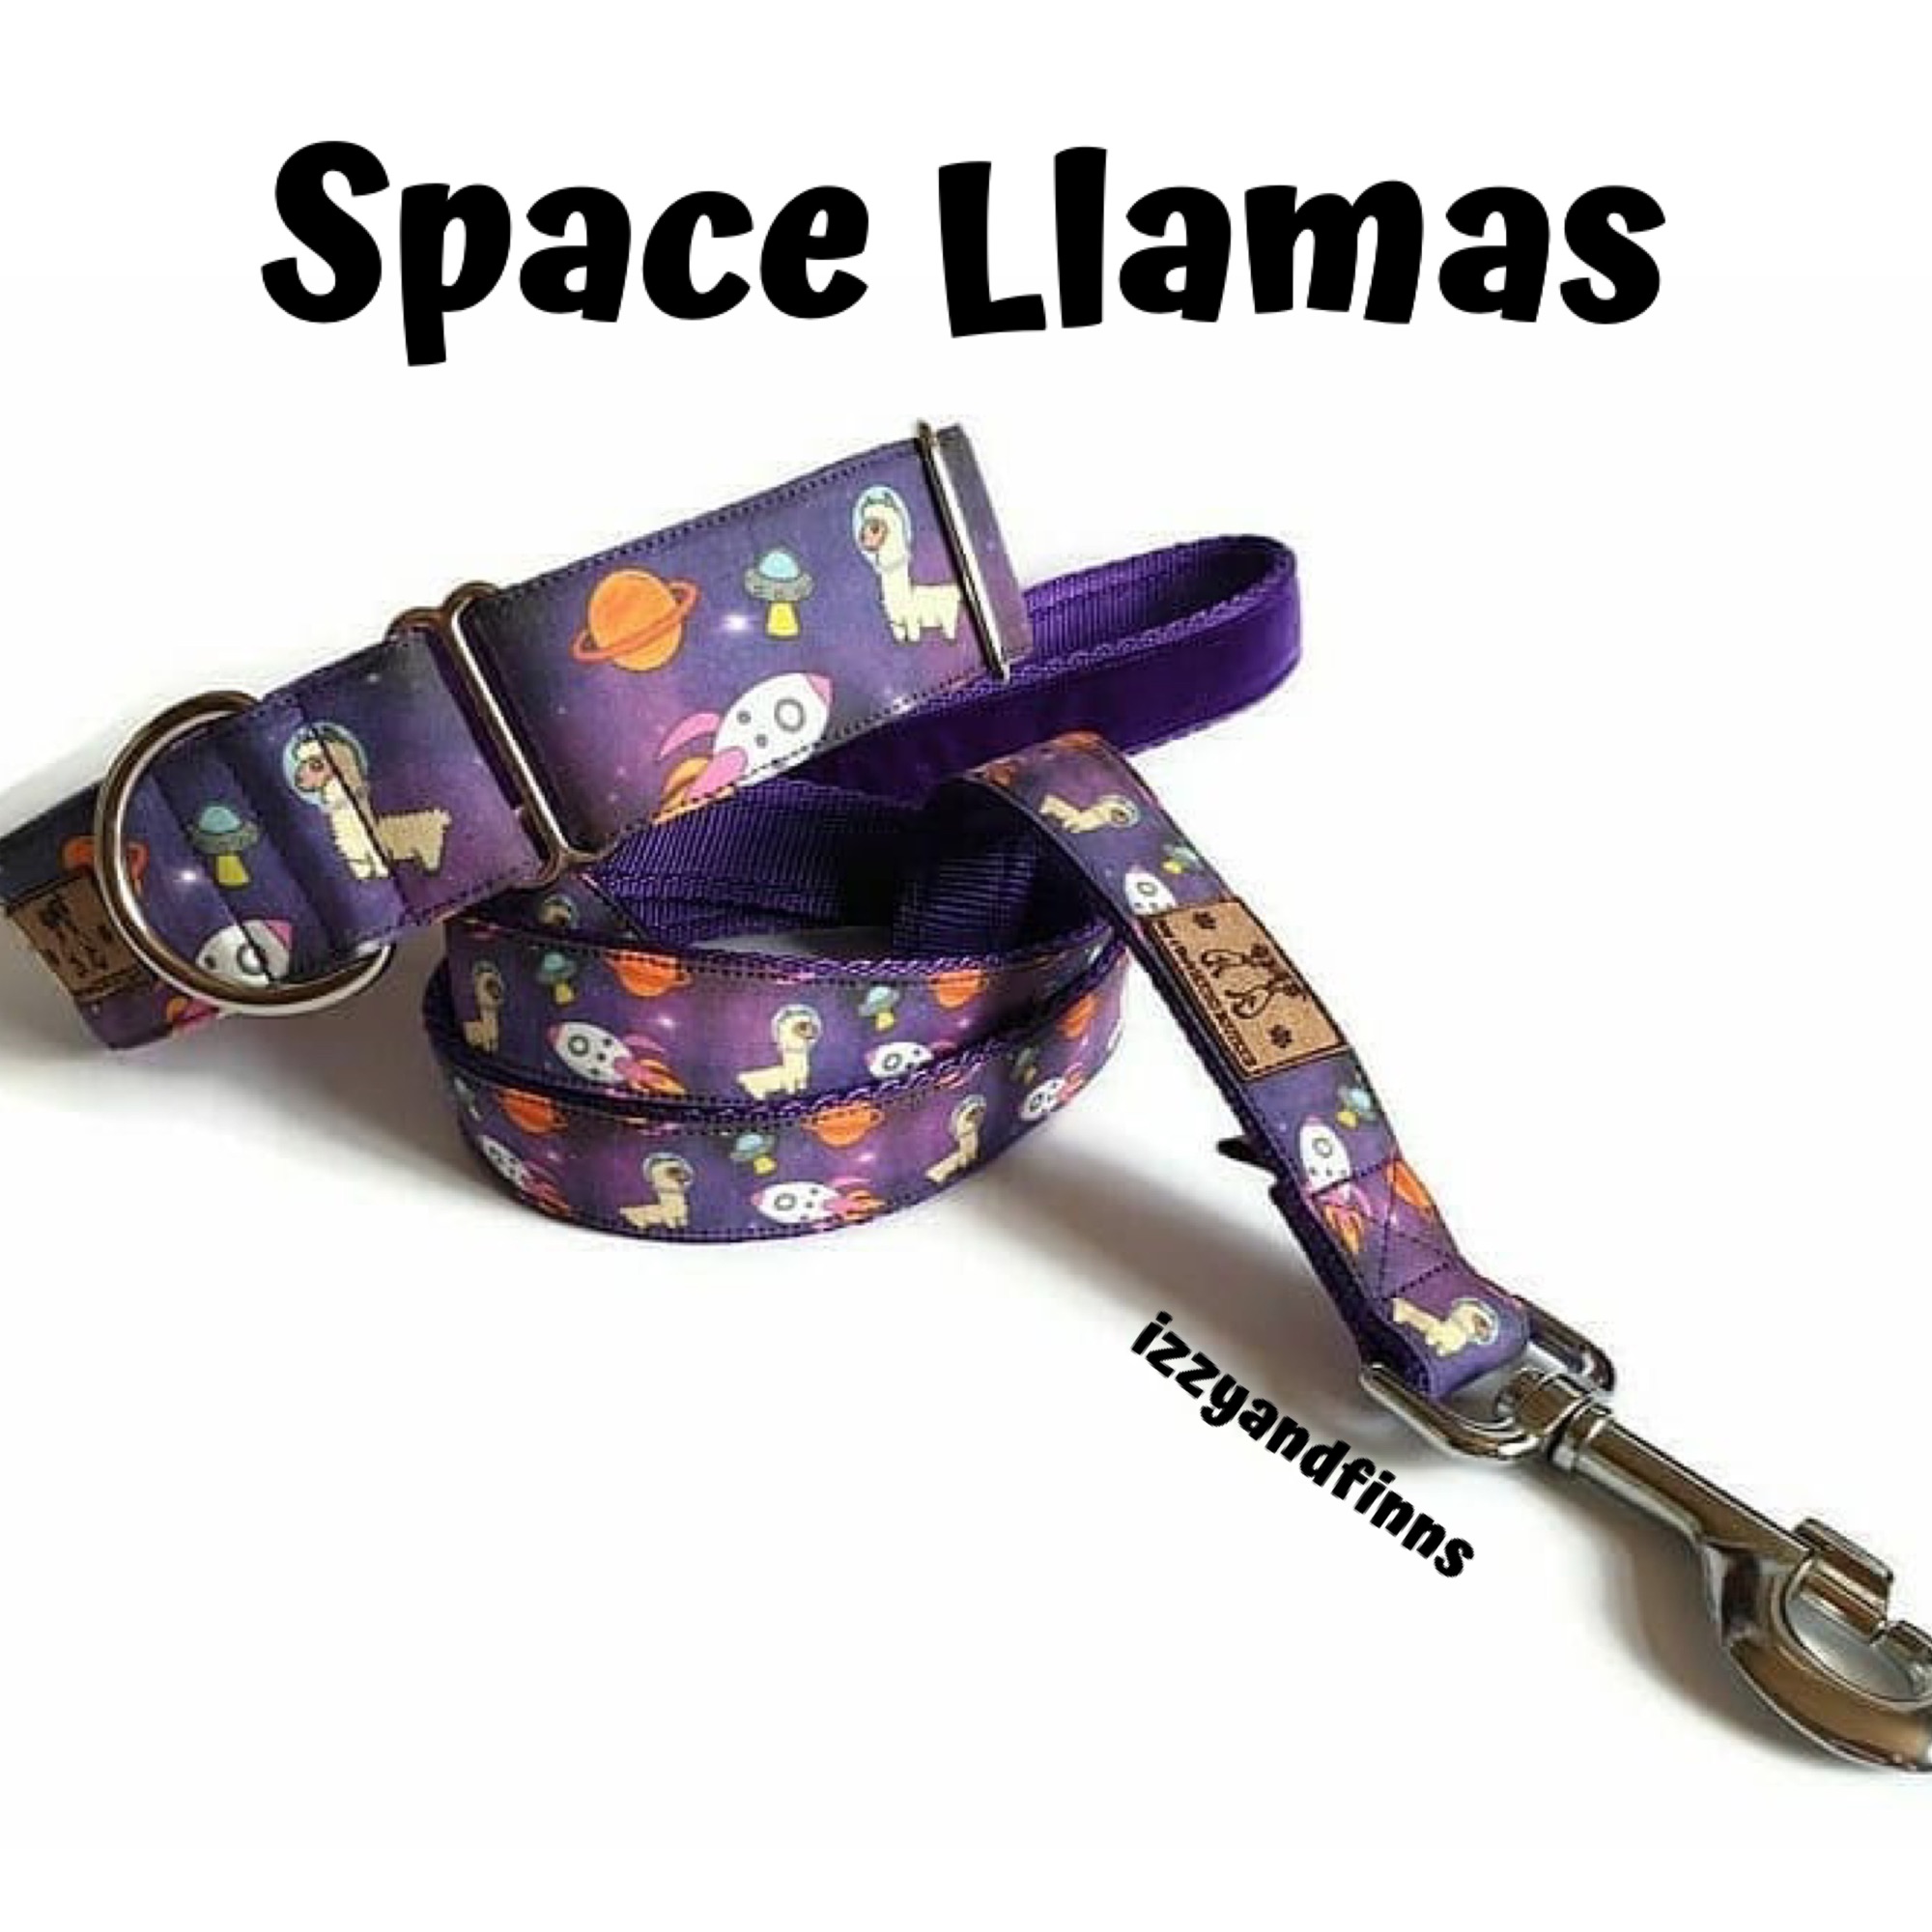 Space Llamas